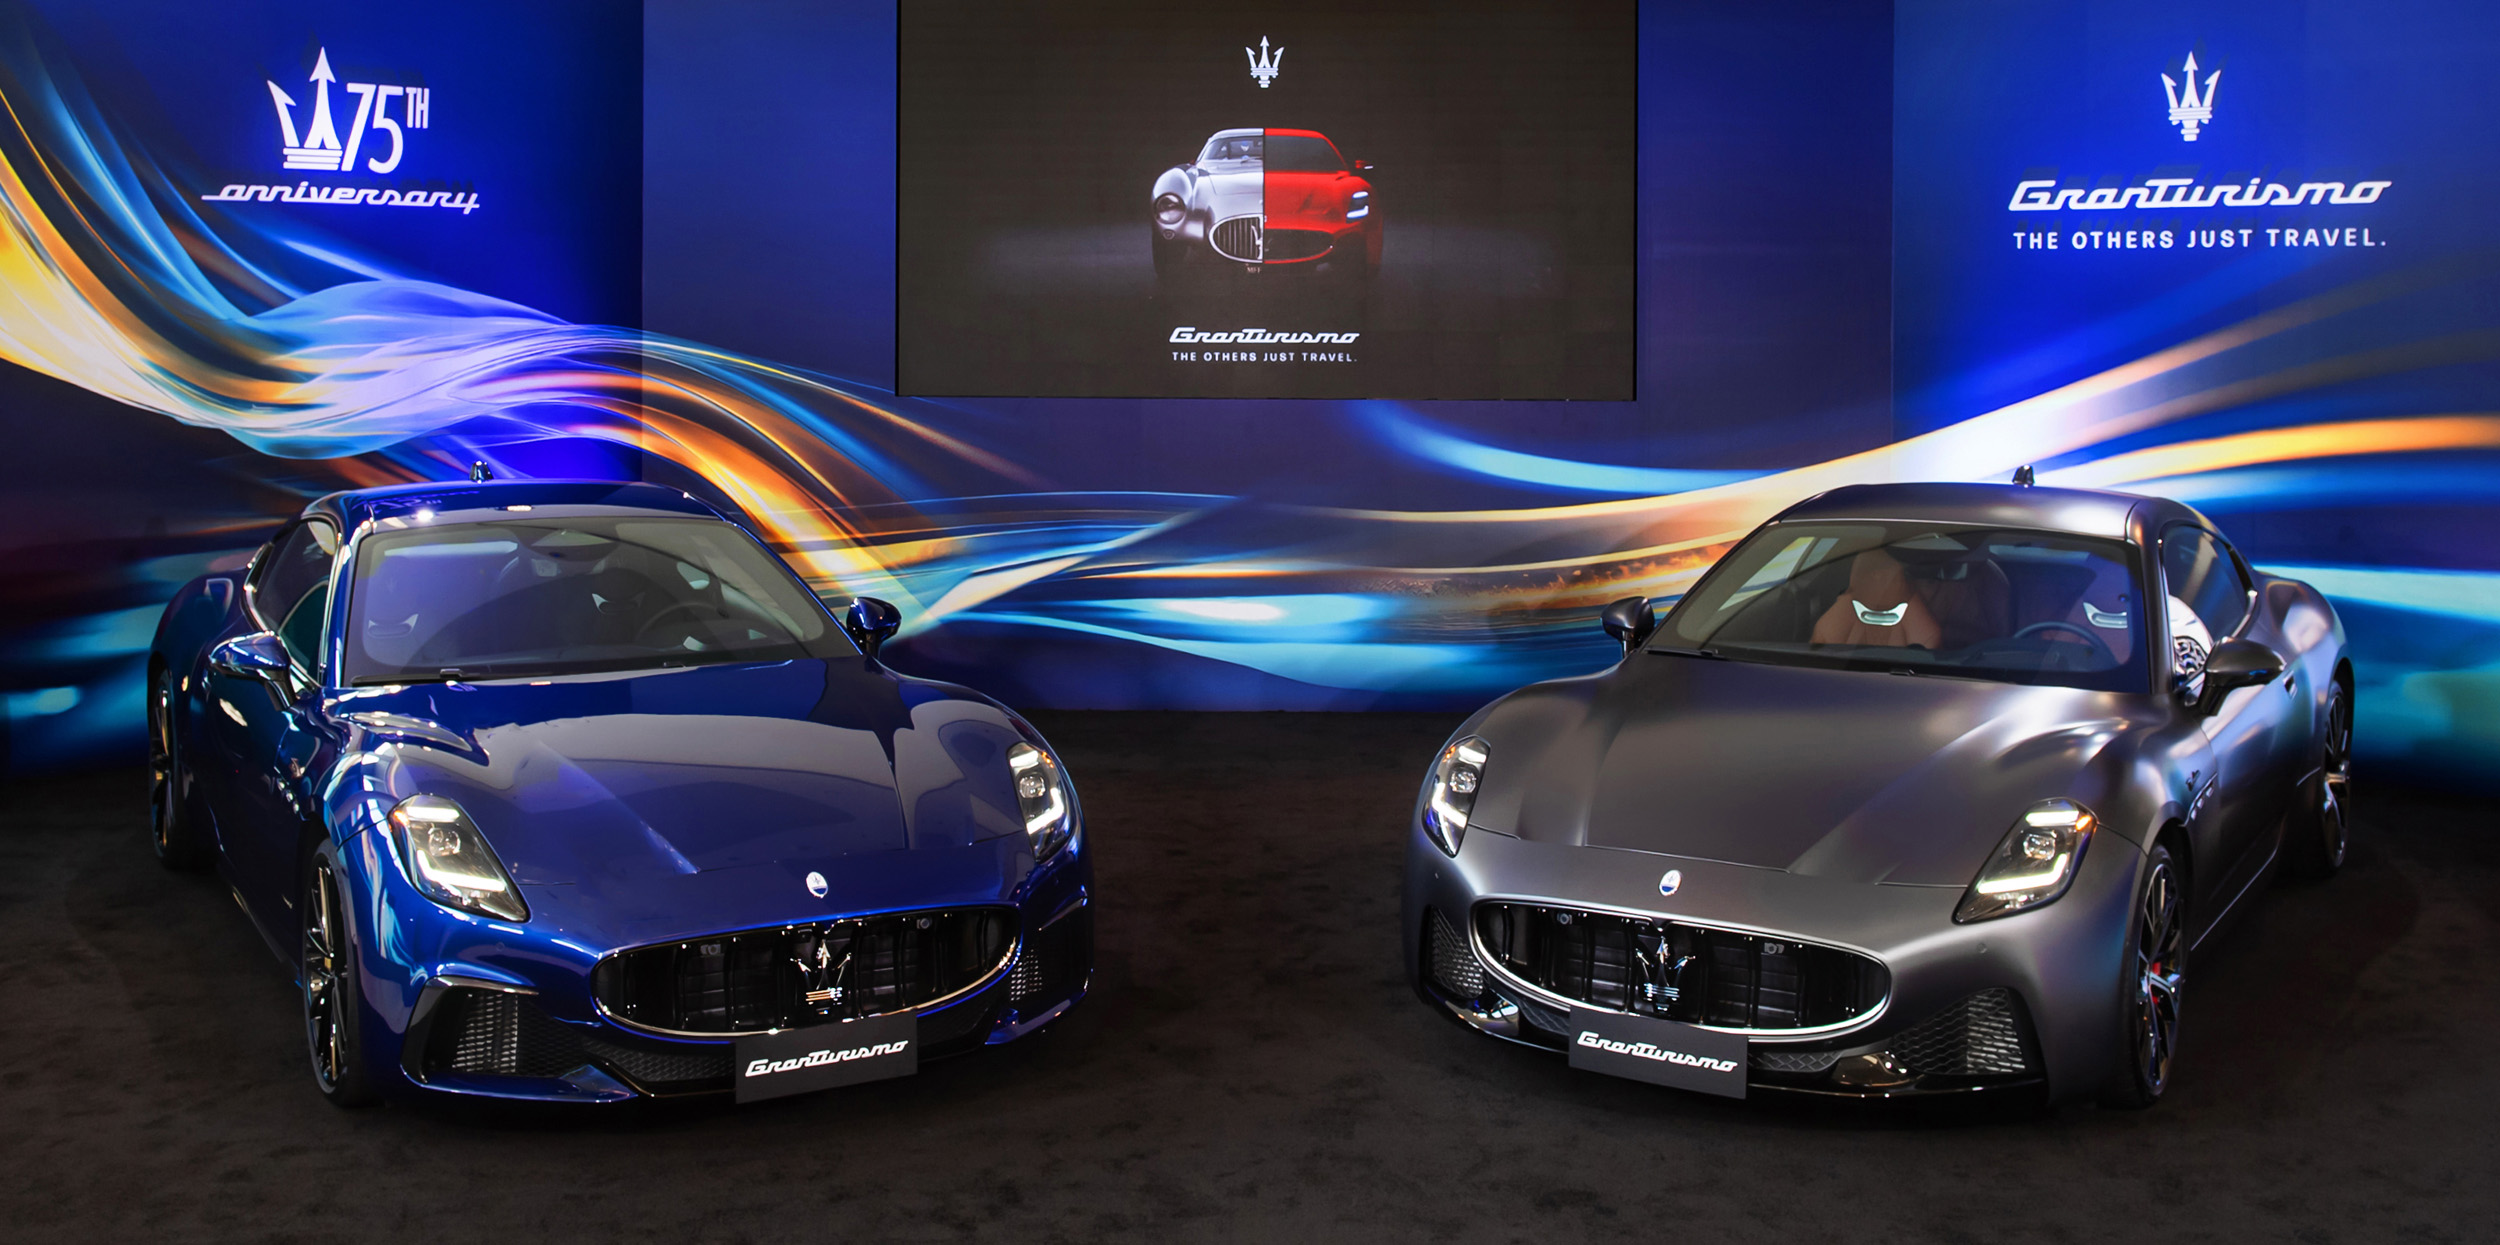 GT 壯遊先鋒再創經典 Maserati 全新 GranTurismo 雙門 GT 轎跑在臺首度亮相 9月起開放預接單